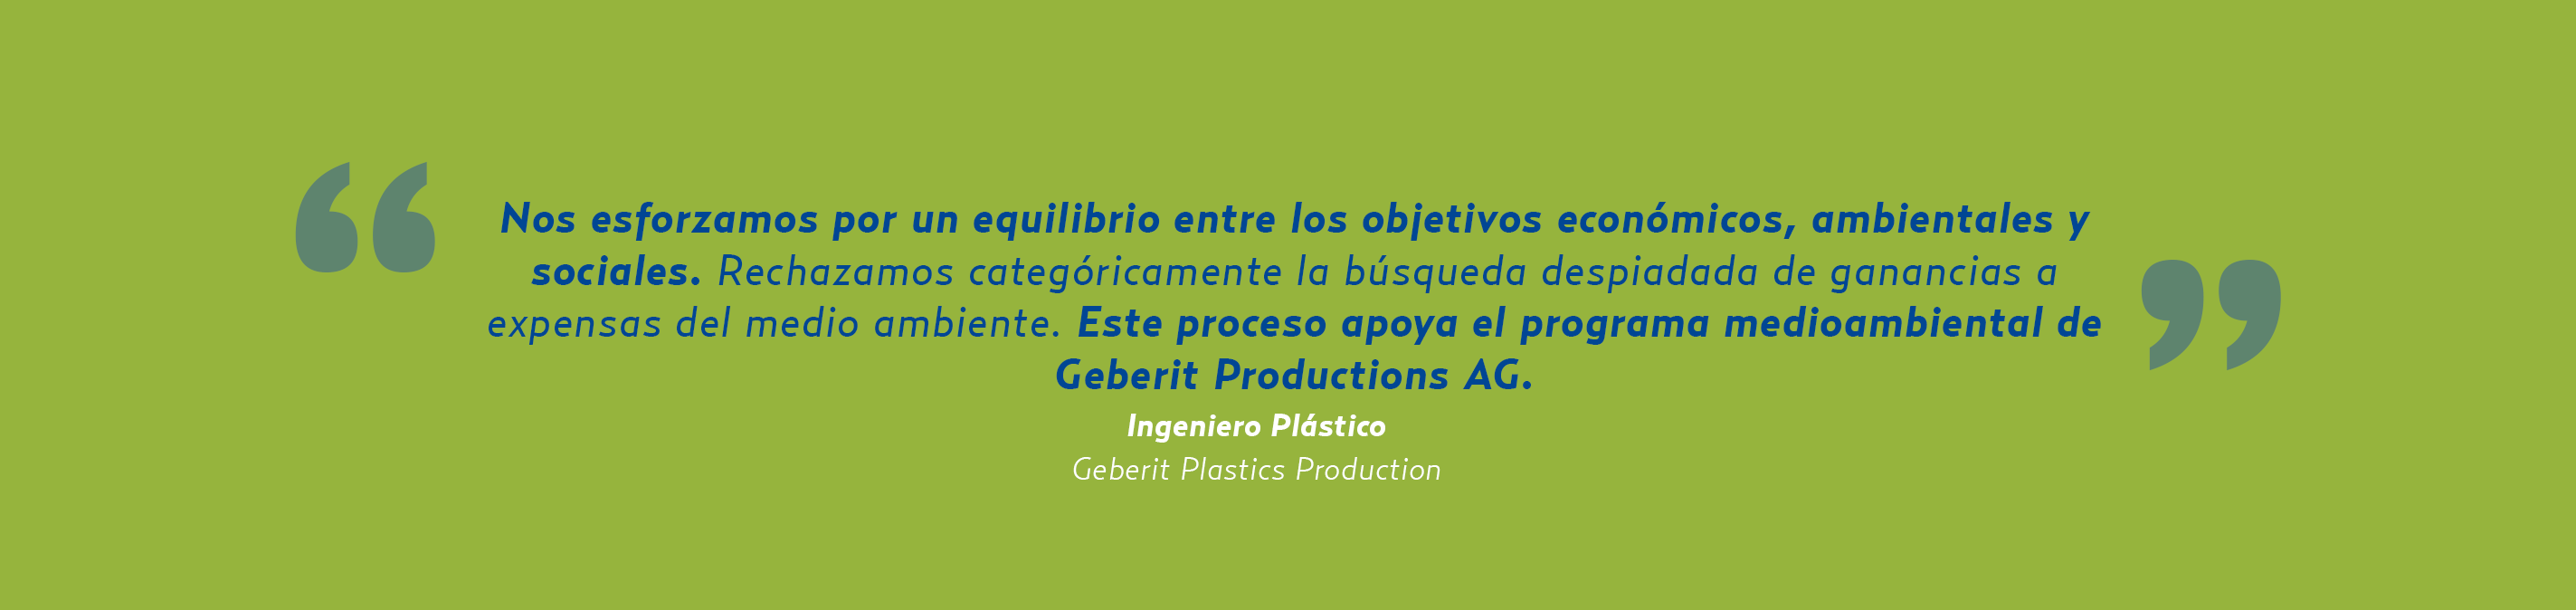 Sostenibilidad medioambiental de la limpieza criogénica - Geberit Plastics Production